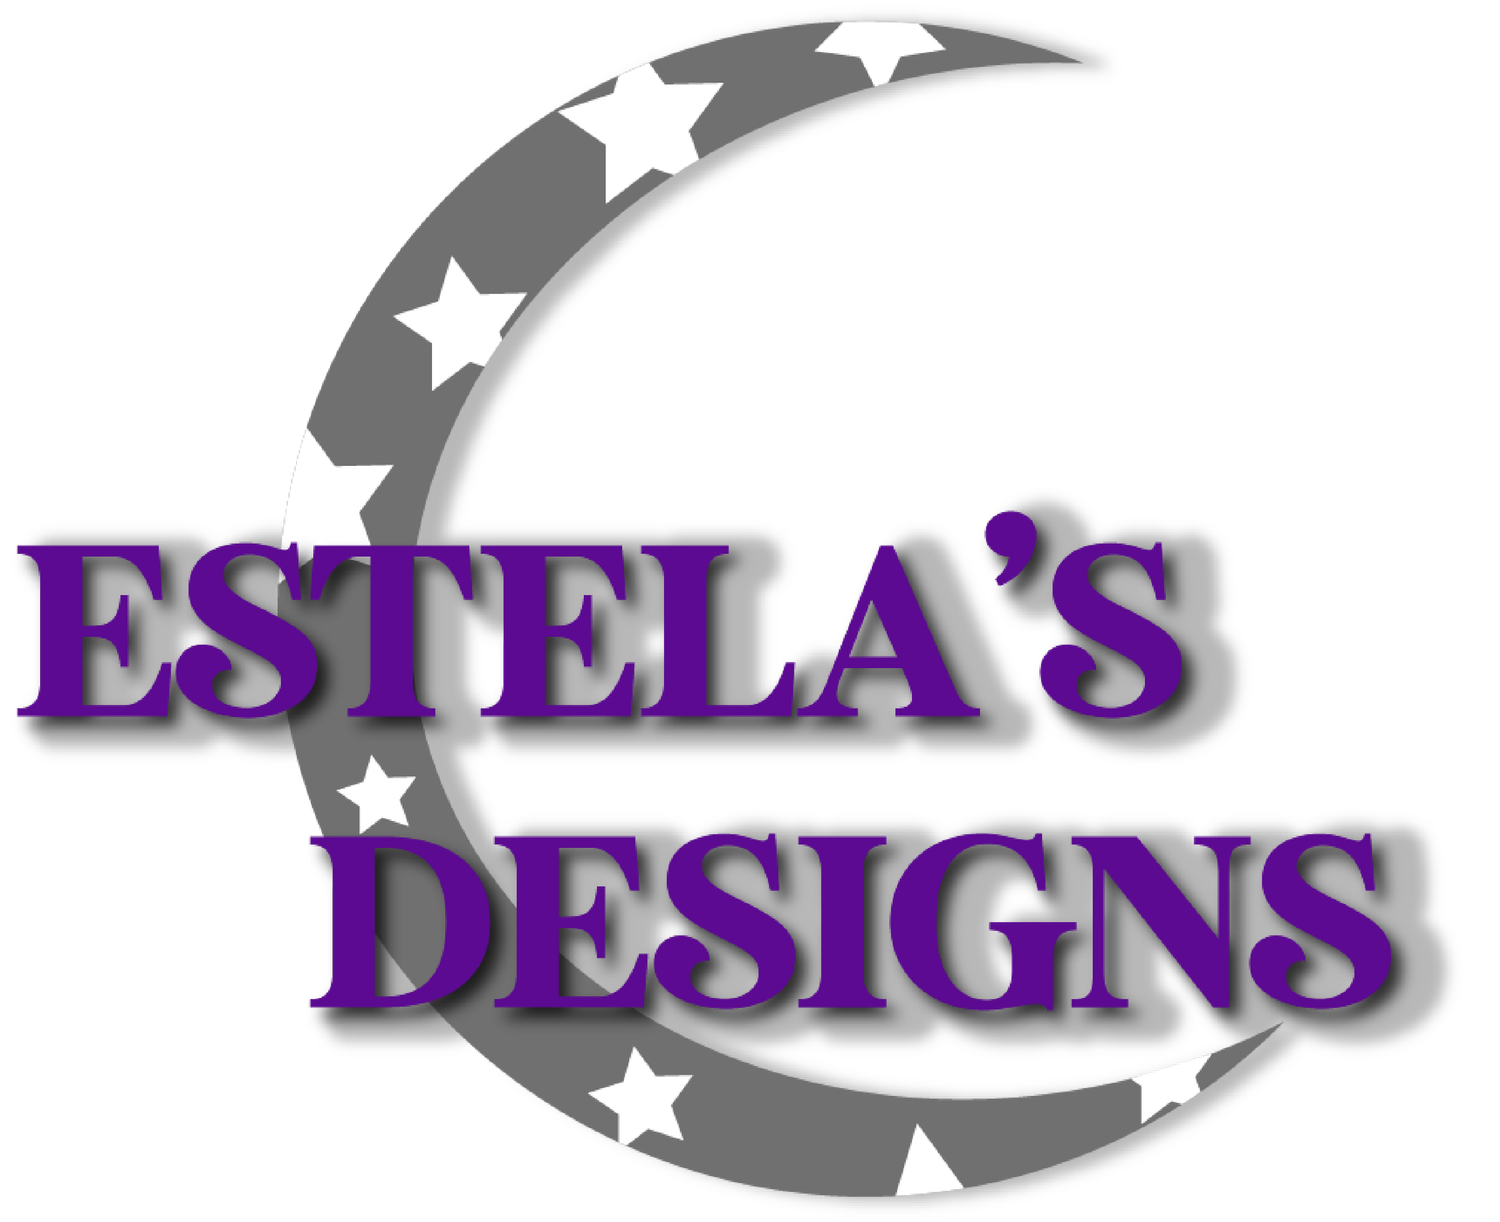 Estelas Designs